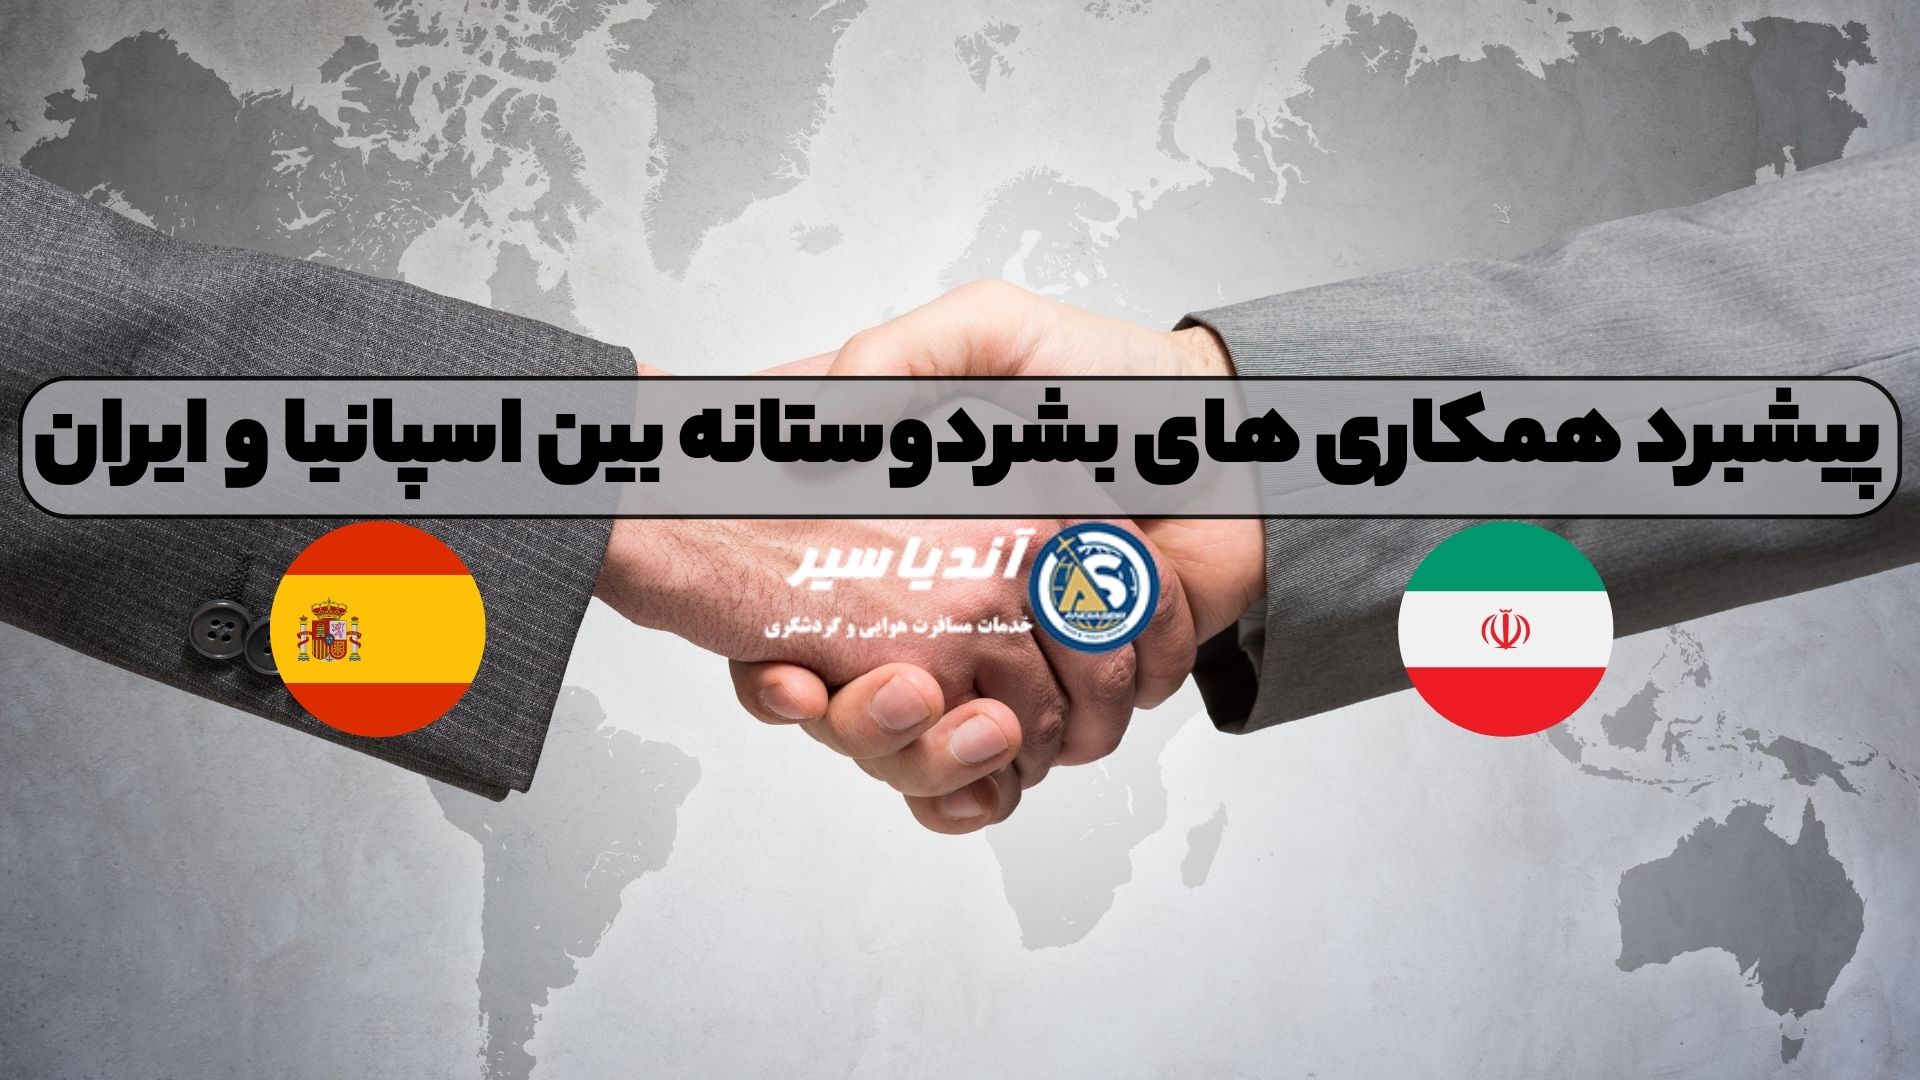 پیشبرد همکاری های بشردوستانه بین اسپانیا و ایران